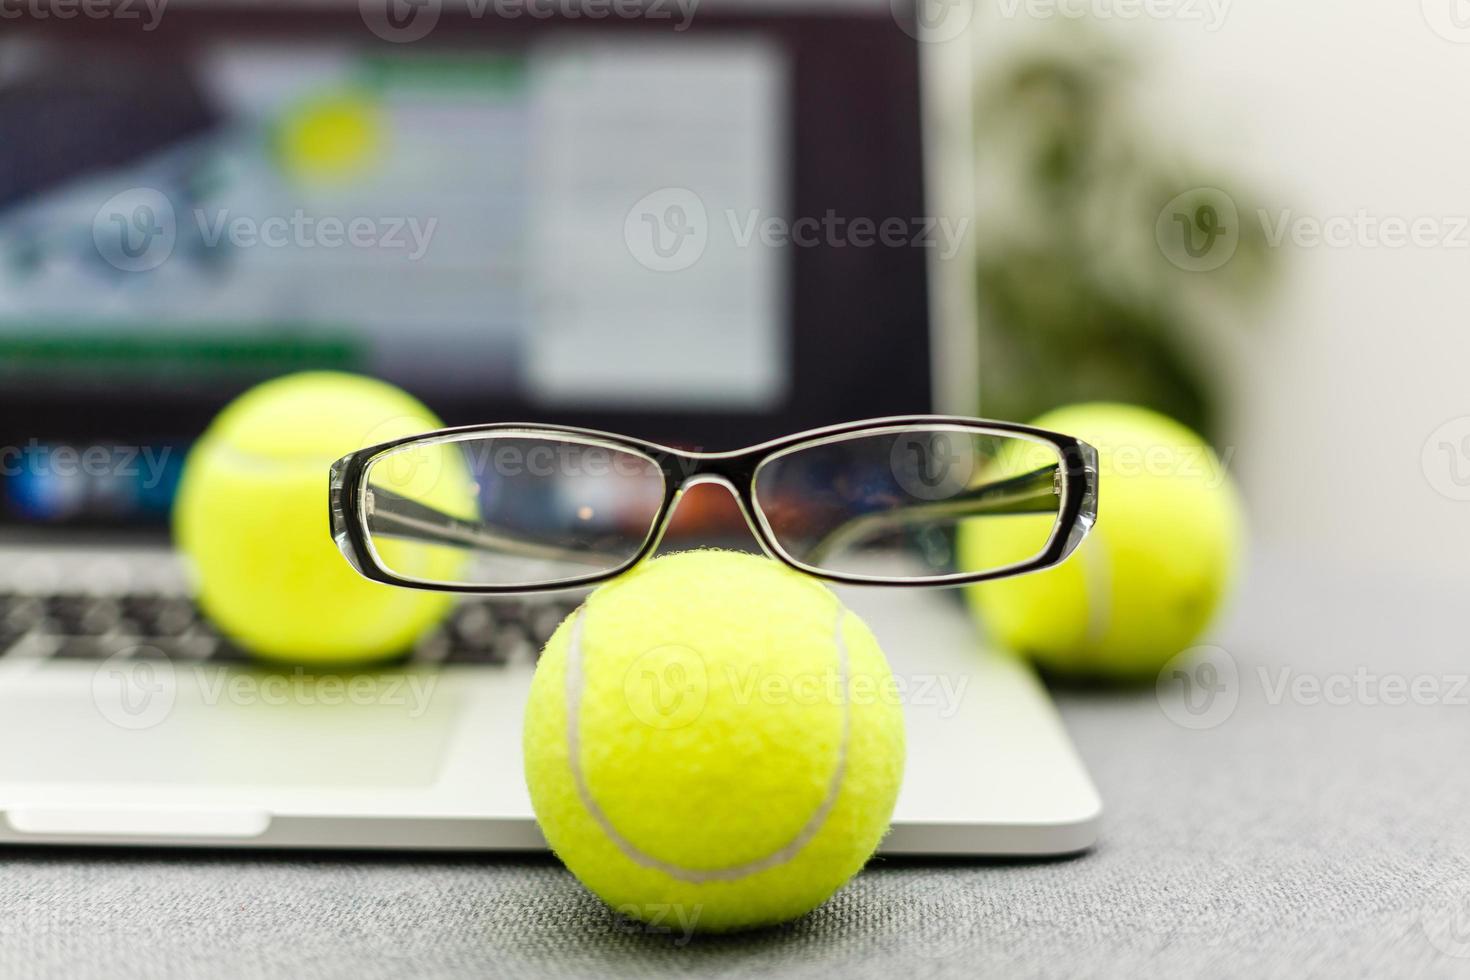 superiore Visualizza di computer portatile, gli sport attrezzatura, tennis sfera, bicchieri su il gli sport amministrazione bianca tavolo.affari concetto. foto